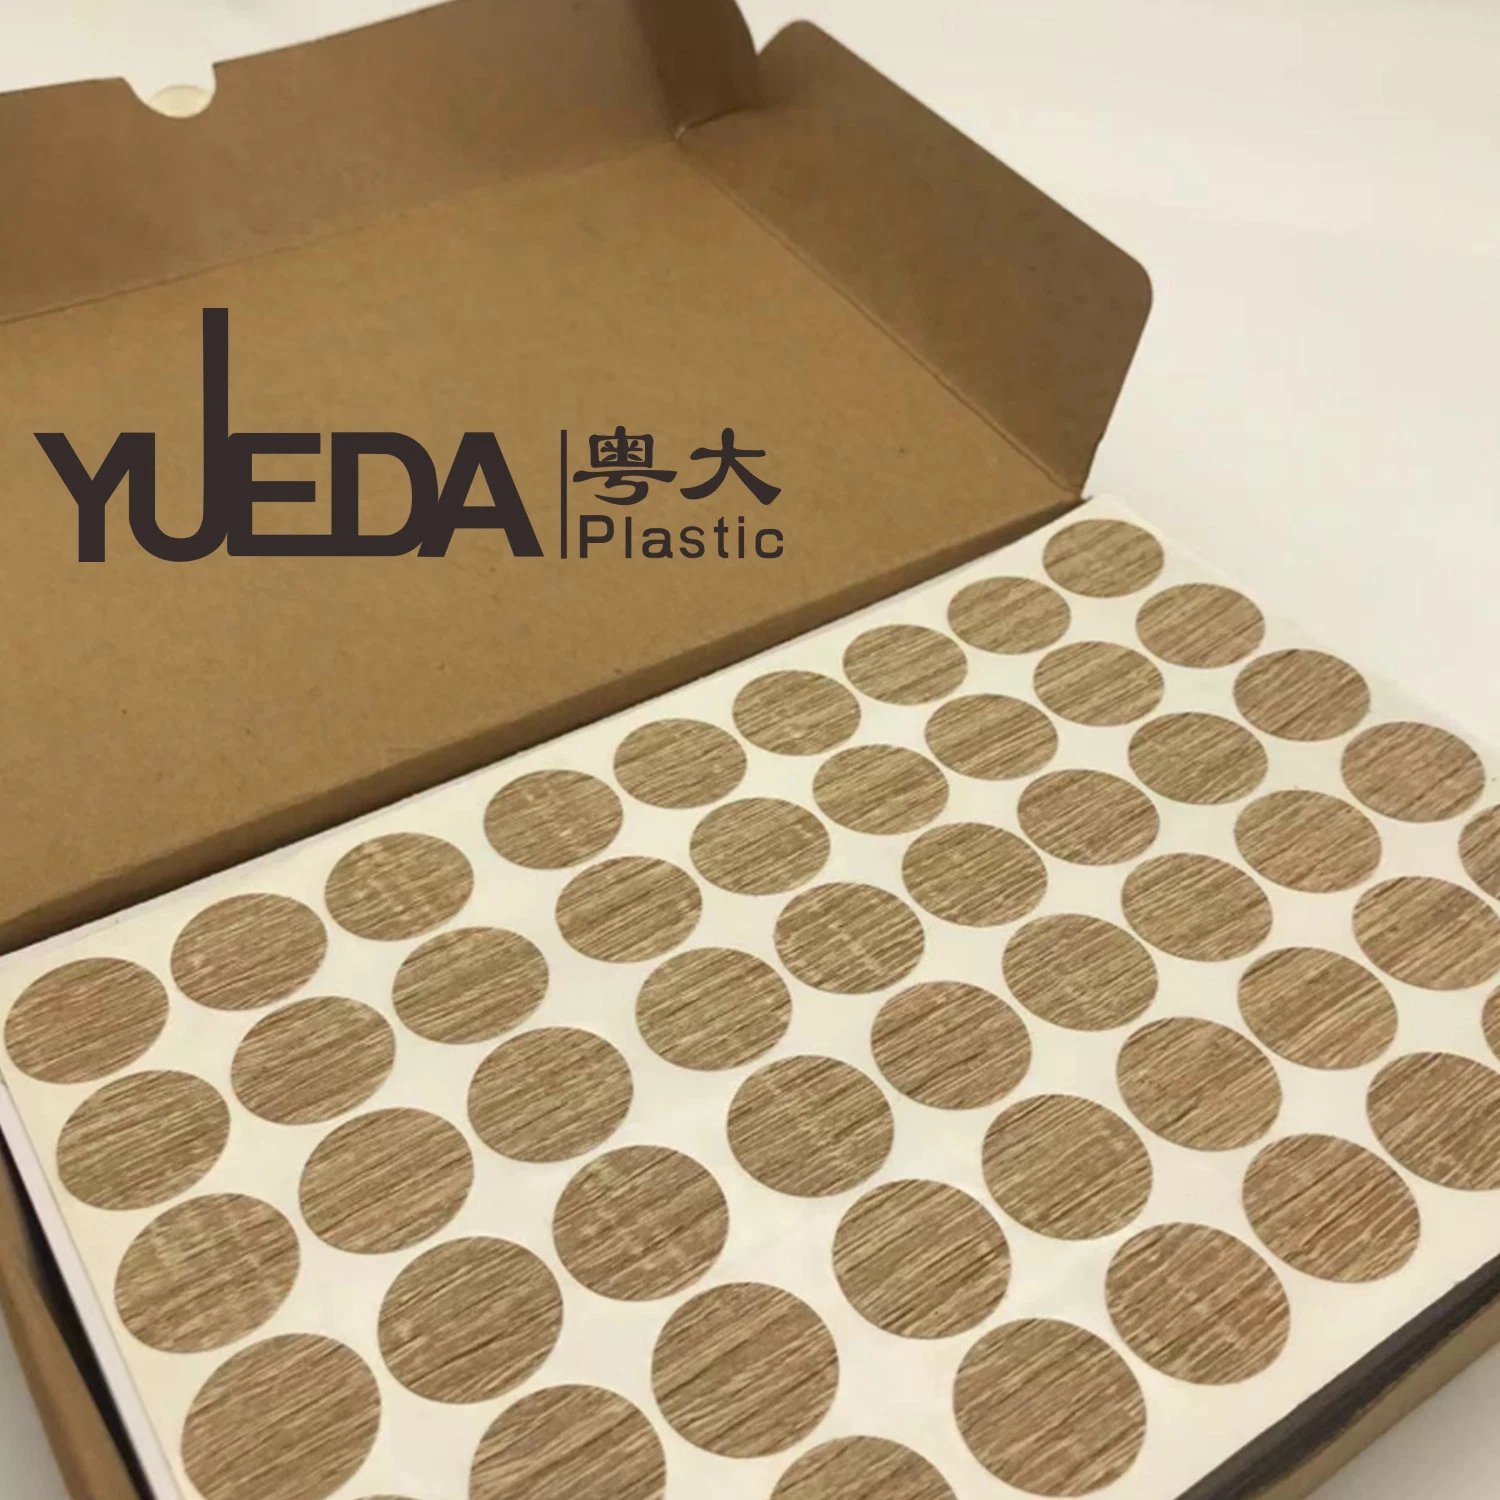 Yueda tapones de rosca de plástico adhesivo/Orificios que cubre la pegatina de muebles de madera BM456